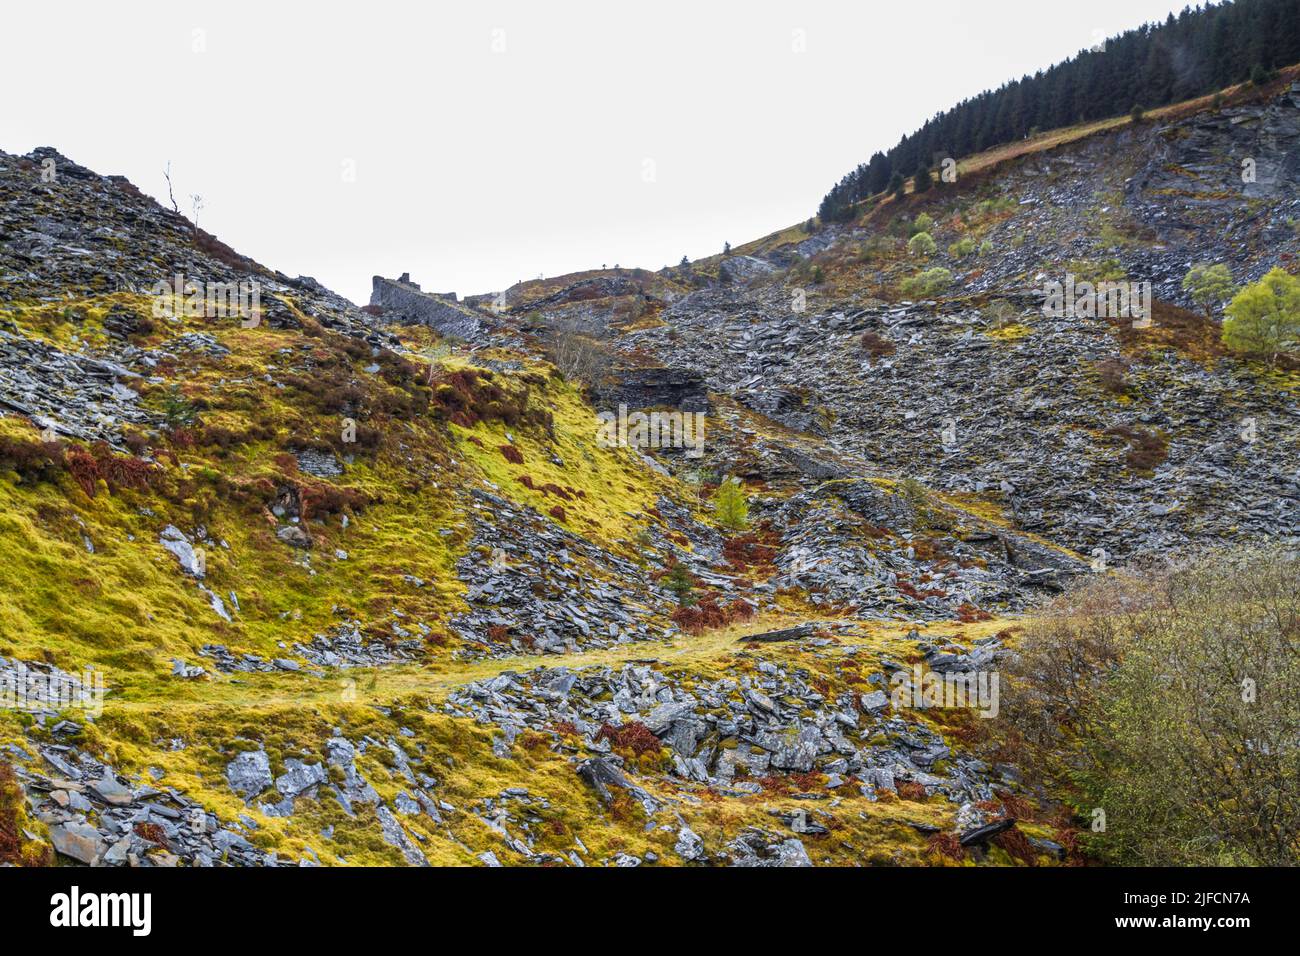 Penmachno Slate Quarry regardant Incline. À Snowdonia, au nord du pays de Galles, au Royaume-Uni. Banque D'Images